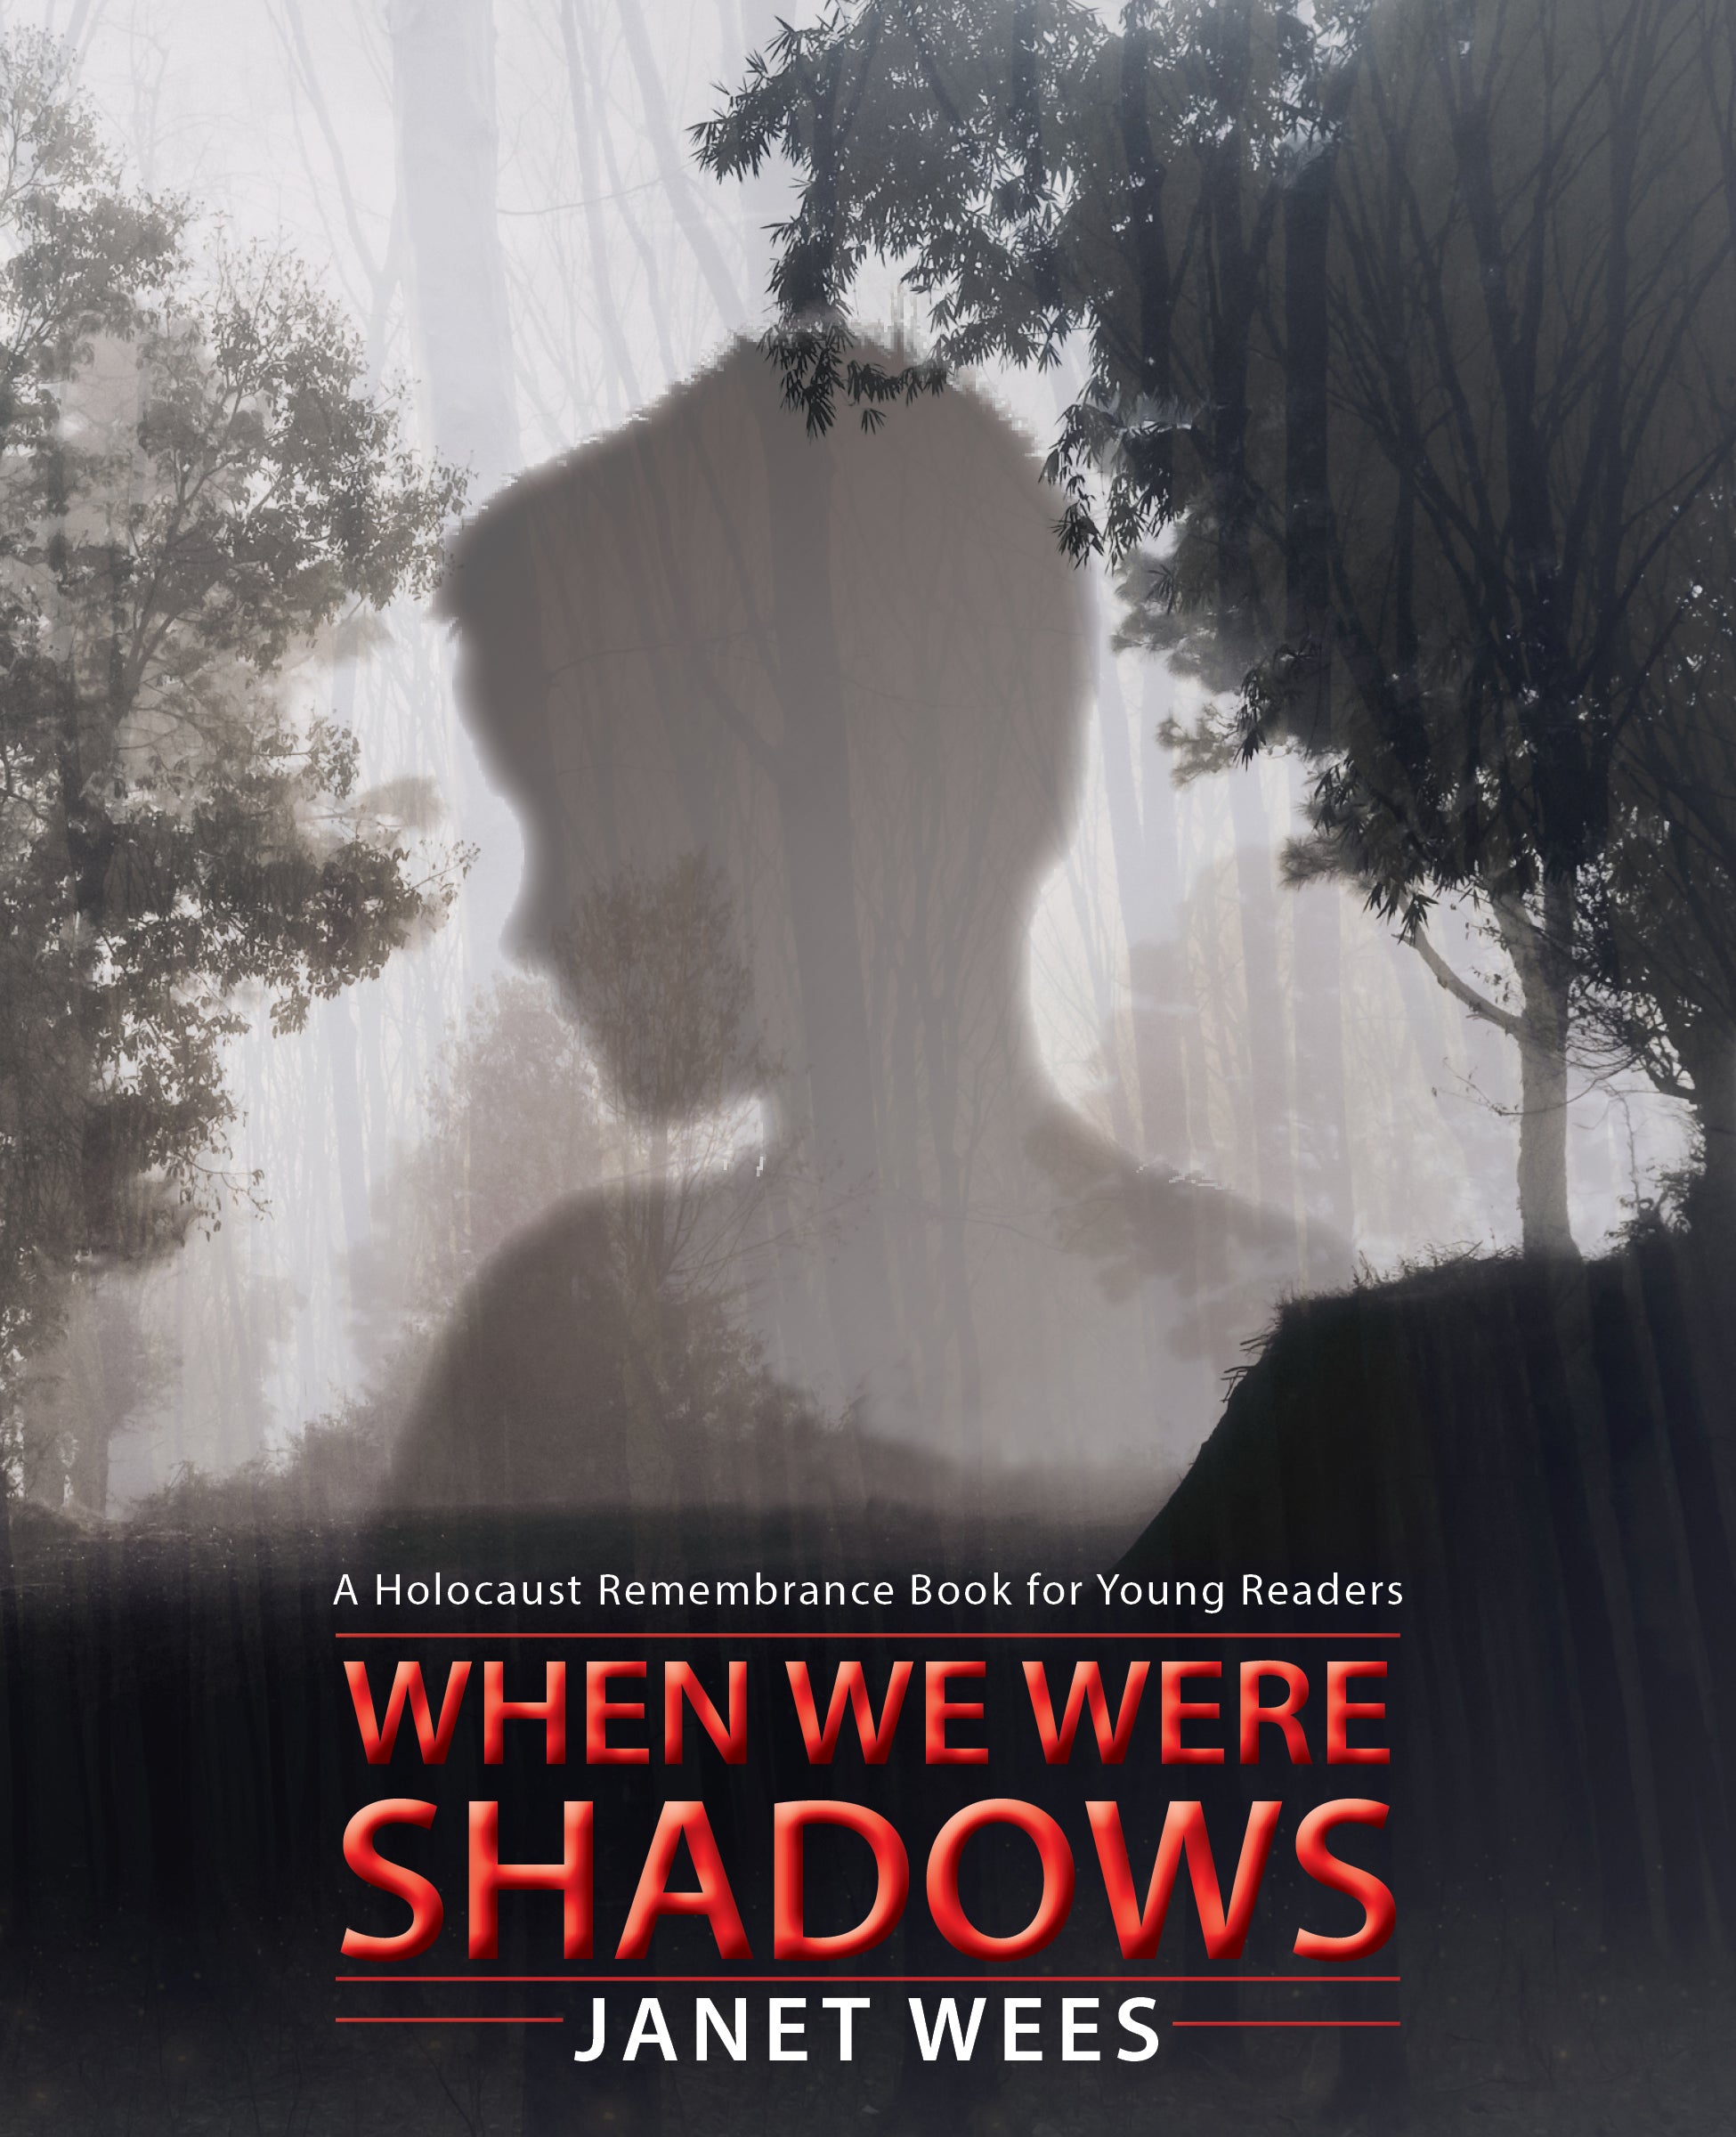 When We Were Shadows